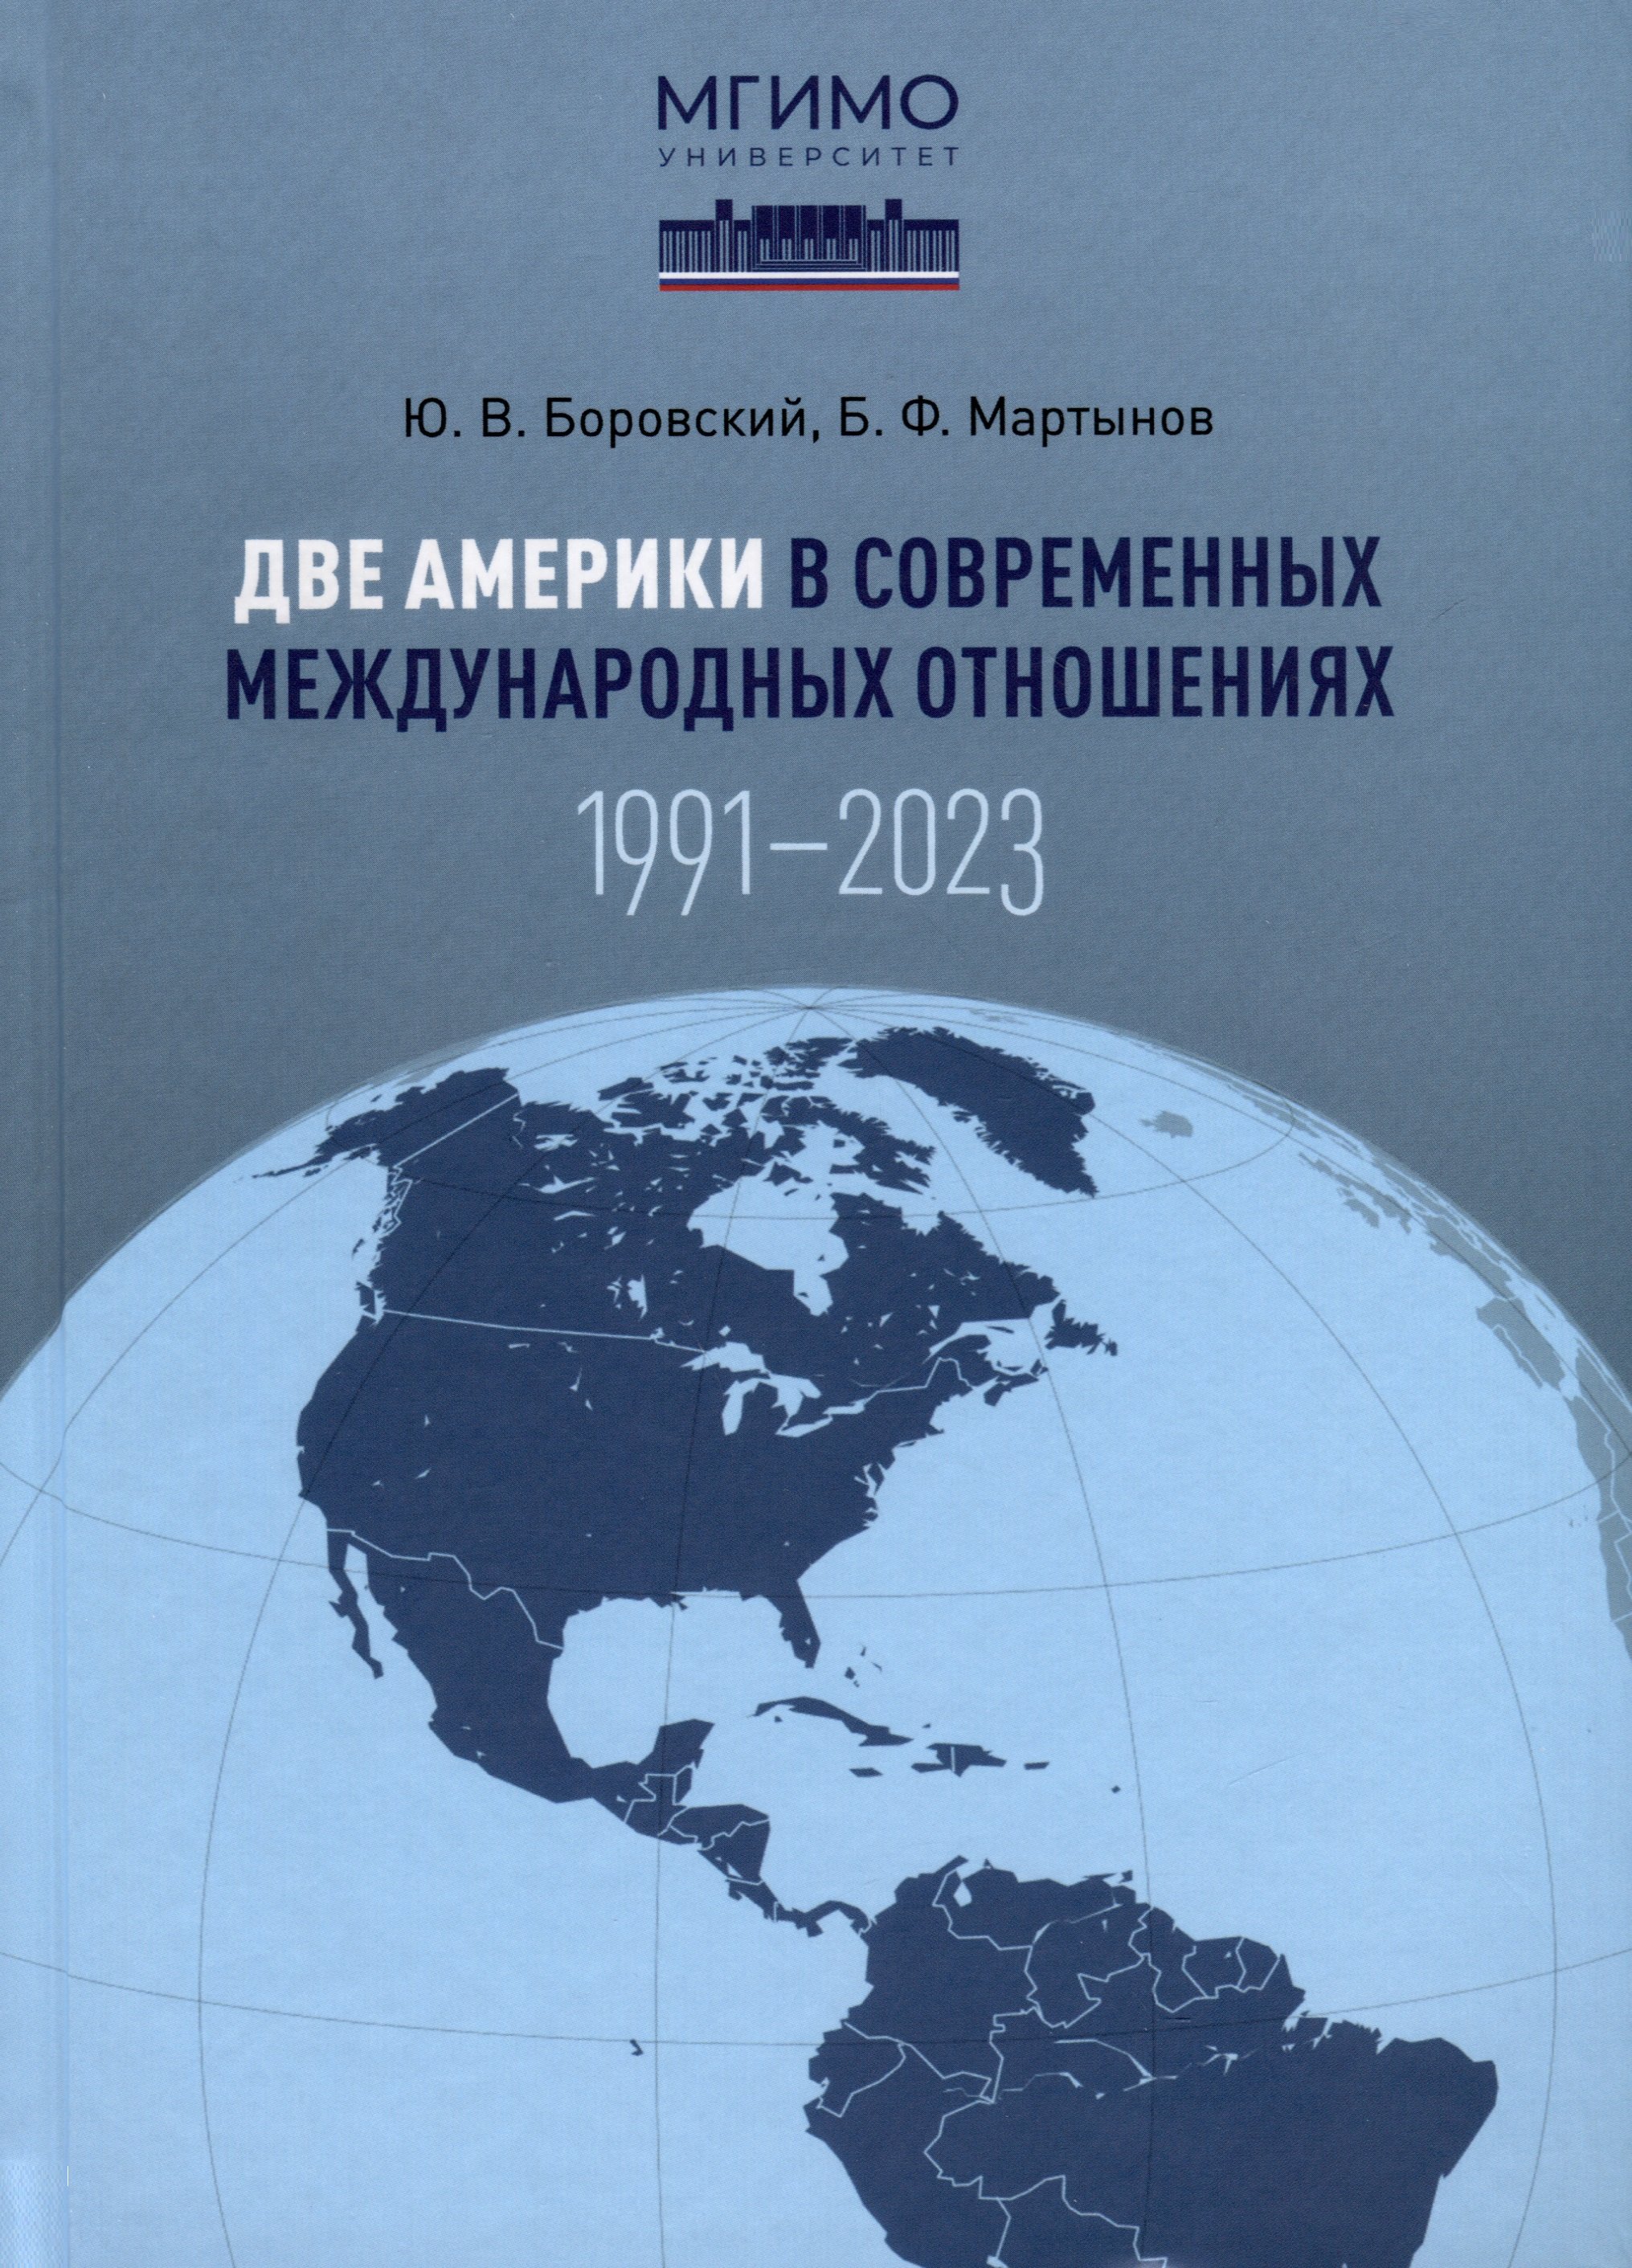       (1991 2023).  